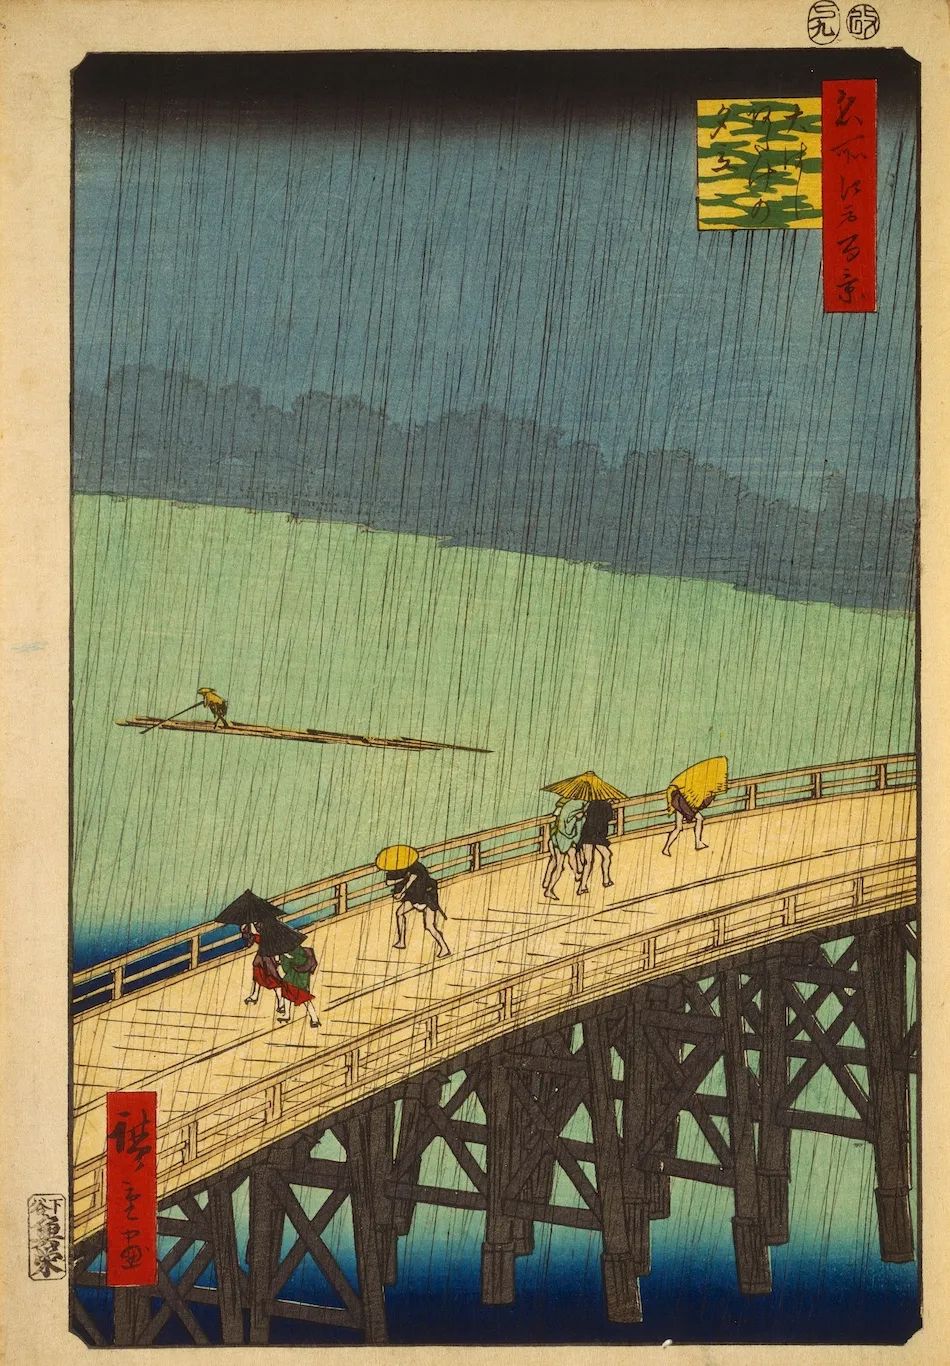 歌川广重《大桥安宅骤雨》 1857年创作 现藏于东京富士美术馆